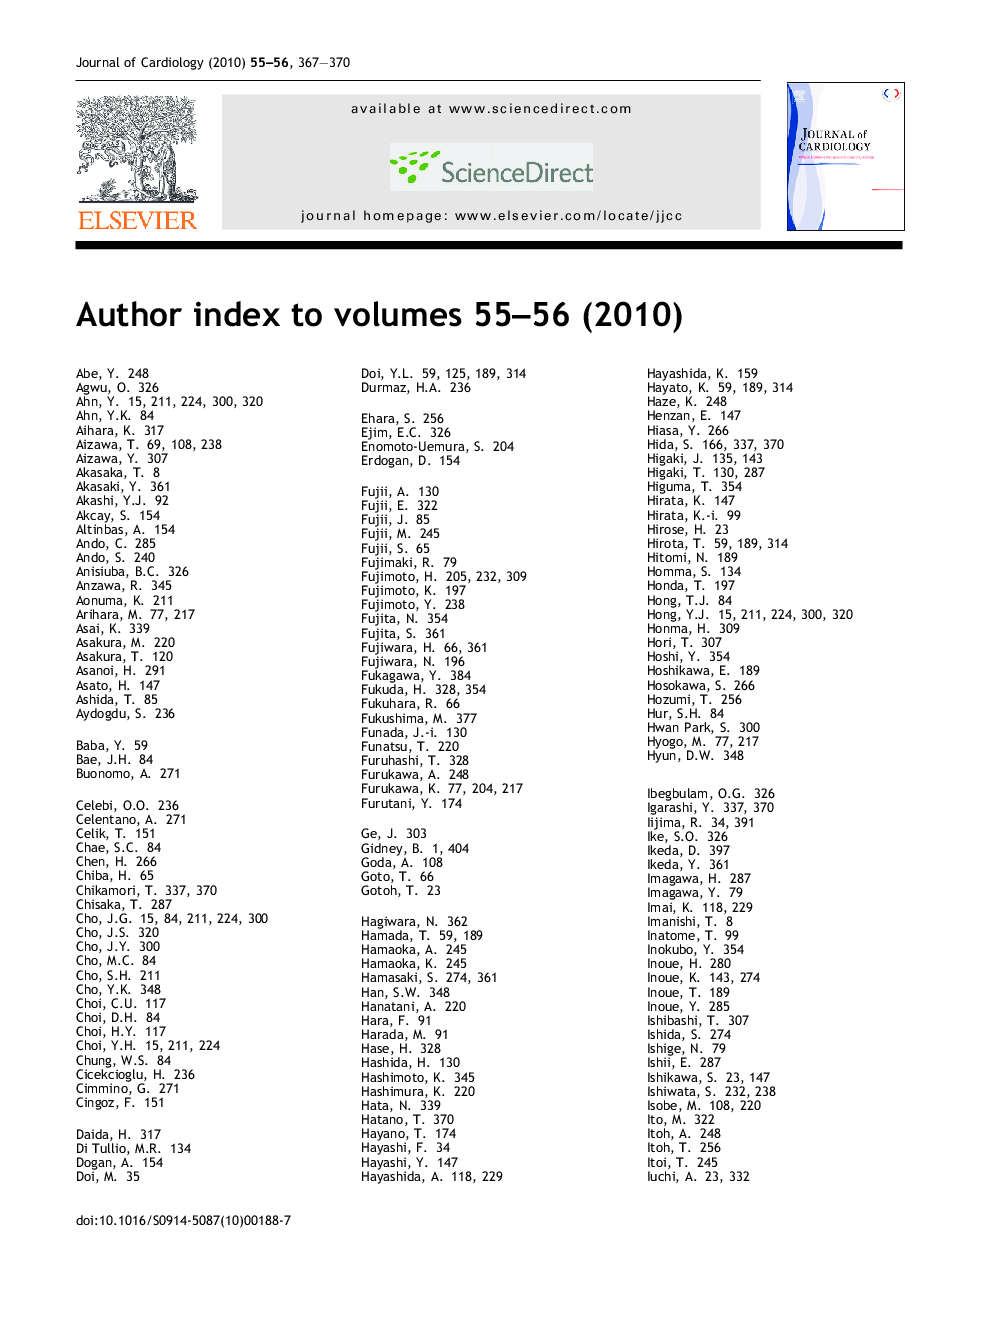 Author Index (2010, volume 55-56)